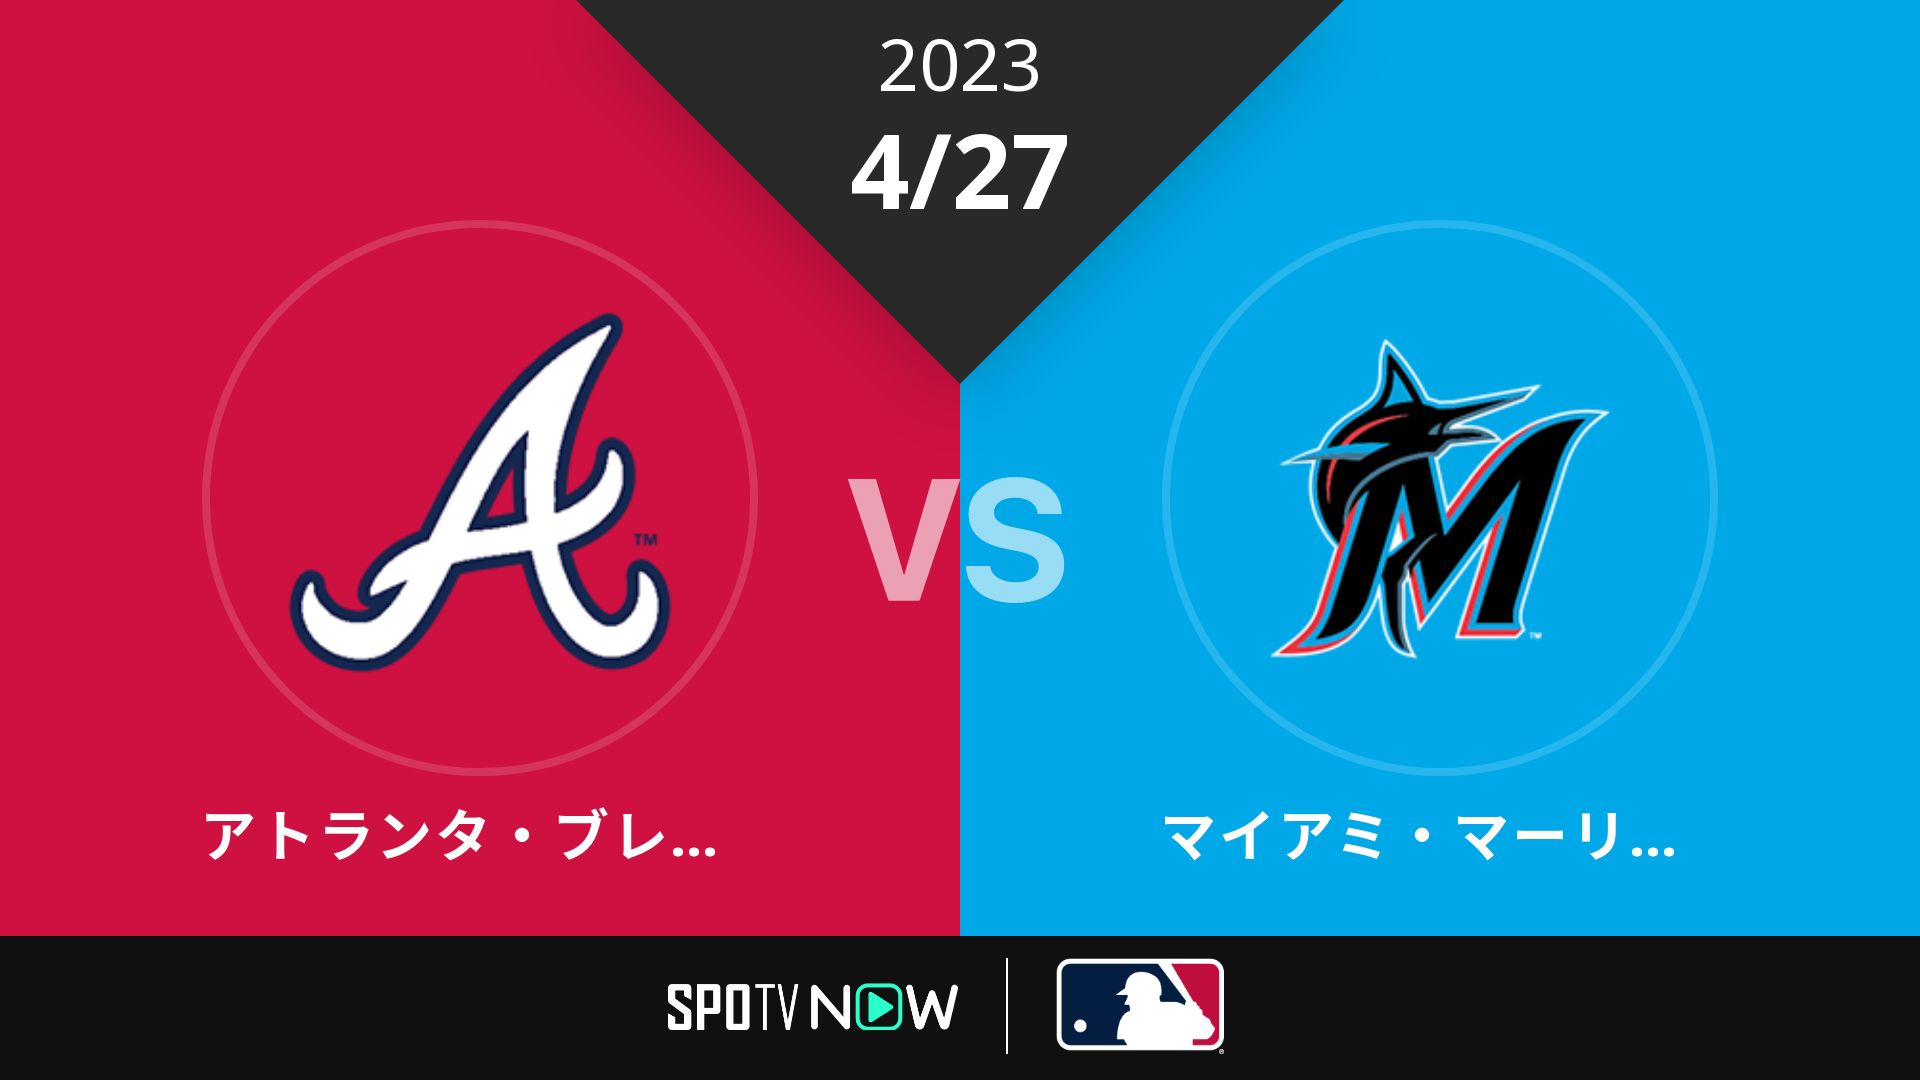 2023/4/27 ブレーブス vs マーリンズ [MLB]